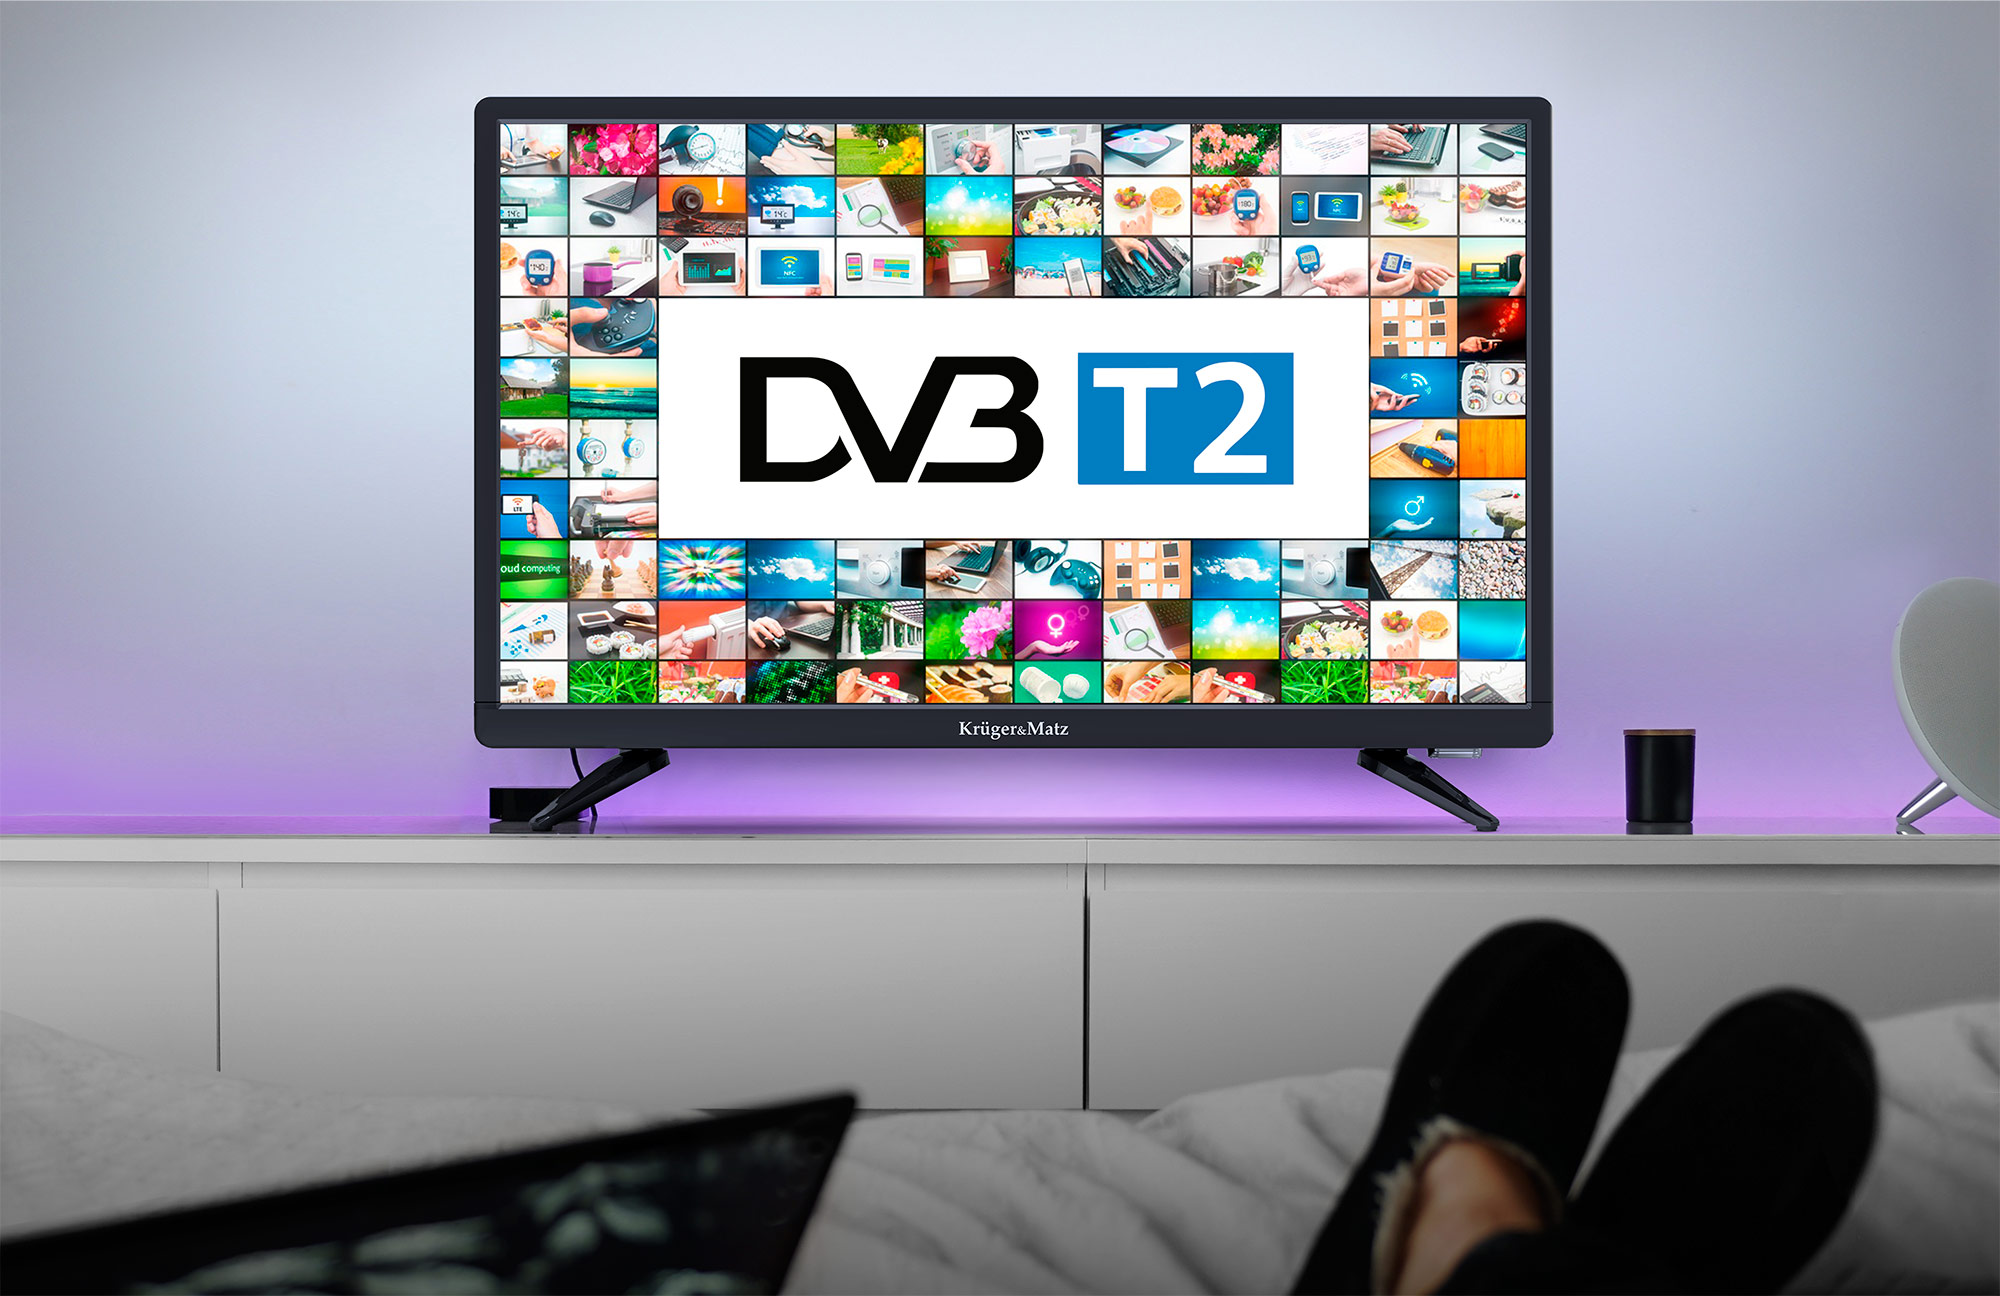 Pentru un plus de confort in utilizare noul televizor de 22 inch de la Kruger&Matz este dotat cu tuner DVB-T2 care foloseste pentru a putea prinde posturile transmise in format digital. Acum nu mai trebuie sa cumperi echipamente in plus!